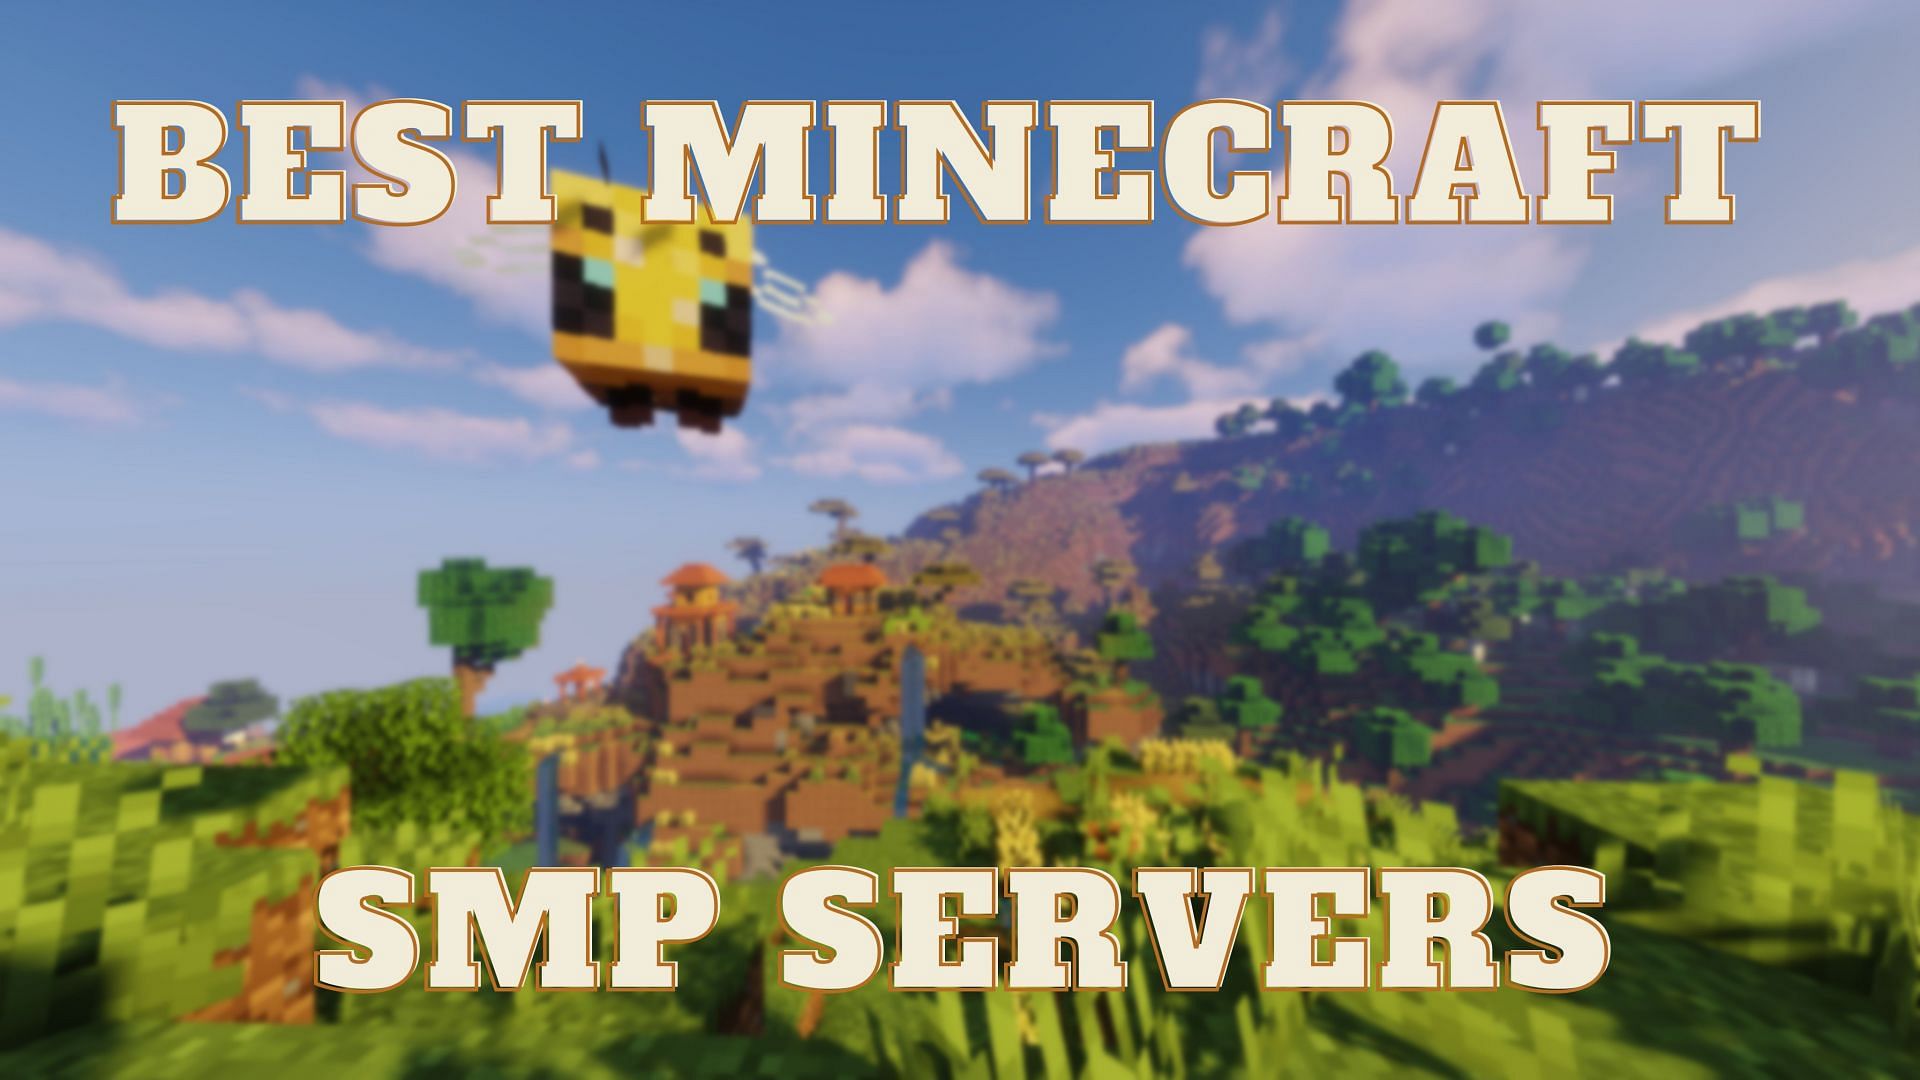 The Minecraft earth server (EarthMC trailer) 